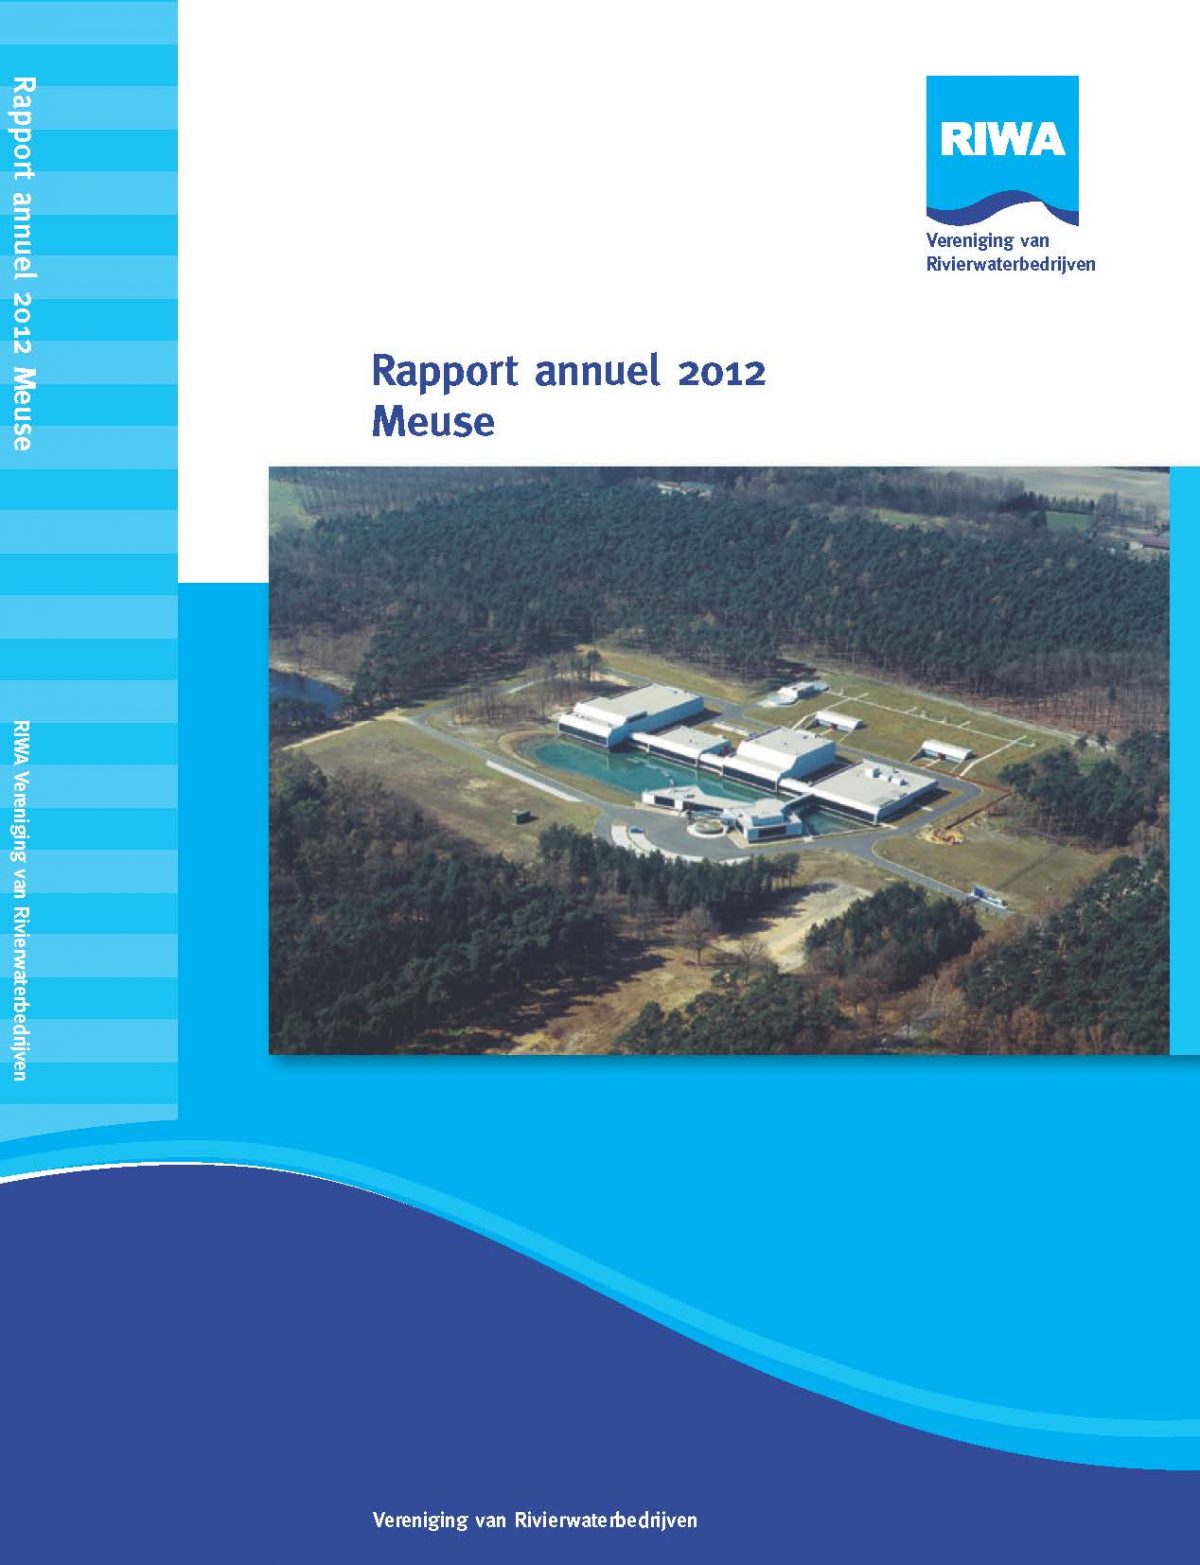 RIWA Rapport Annuel 2012 La Meuse